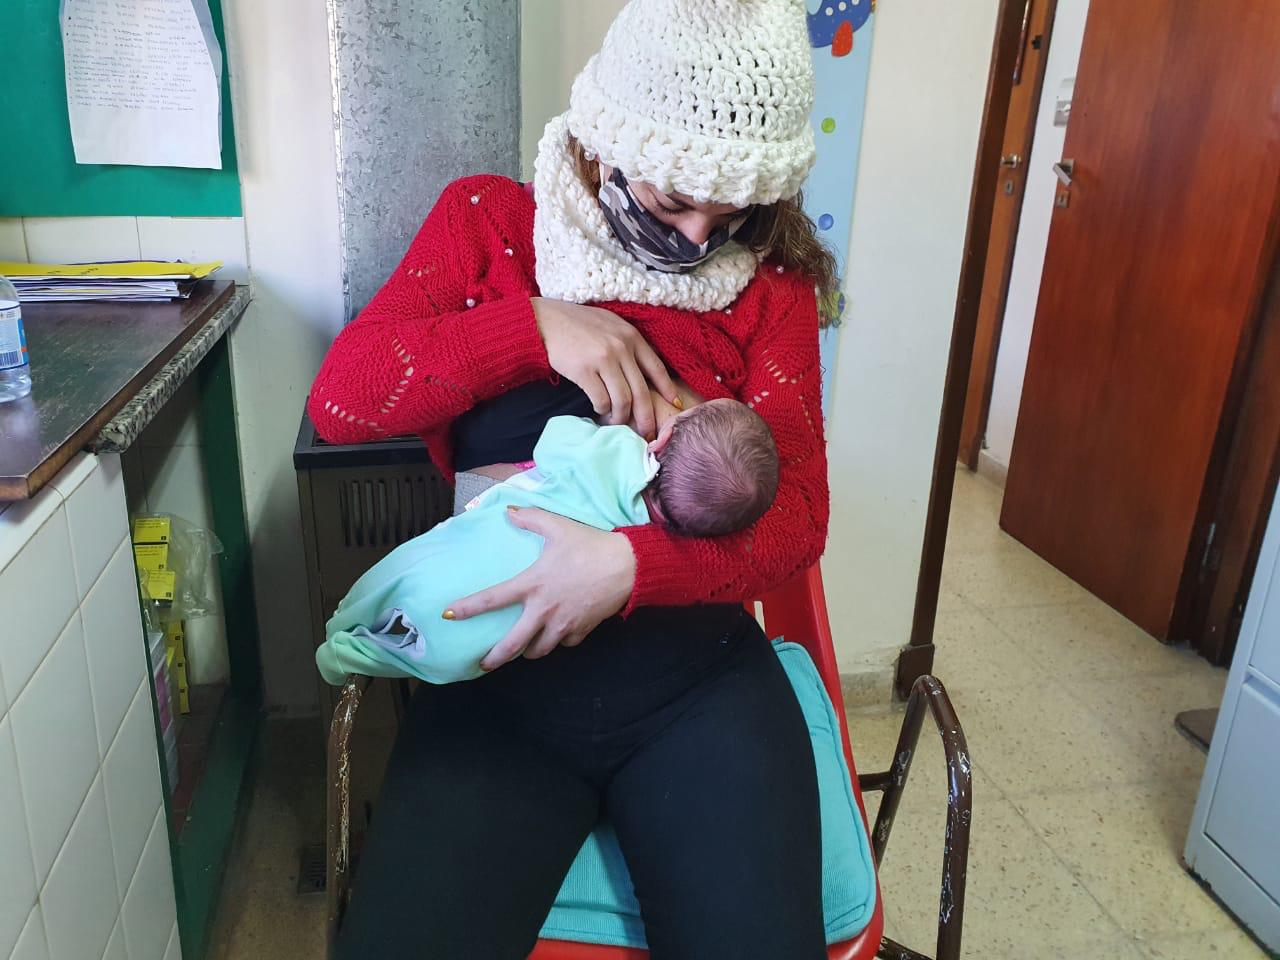 Los pediatras apoyan la lactancia materna en mujeres con coronavirus